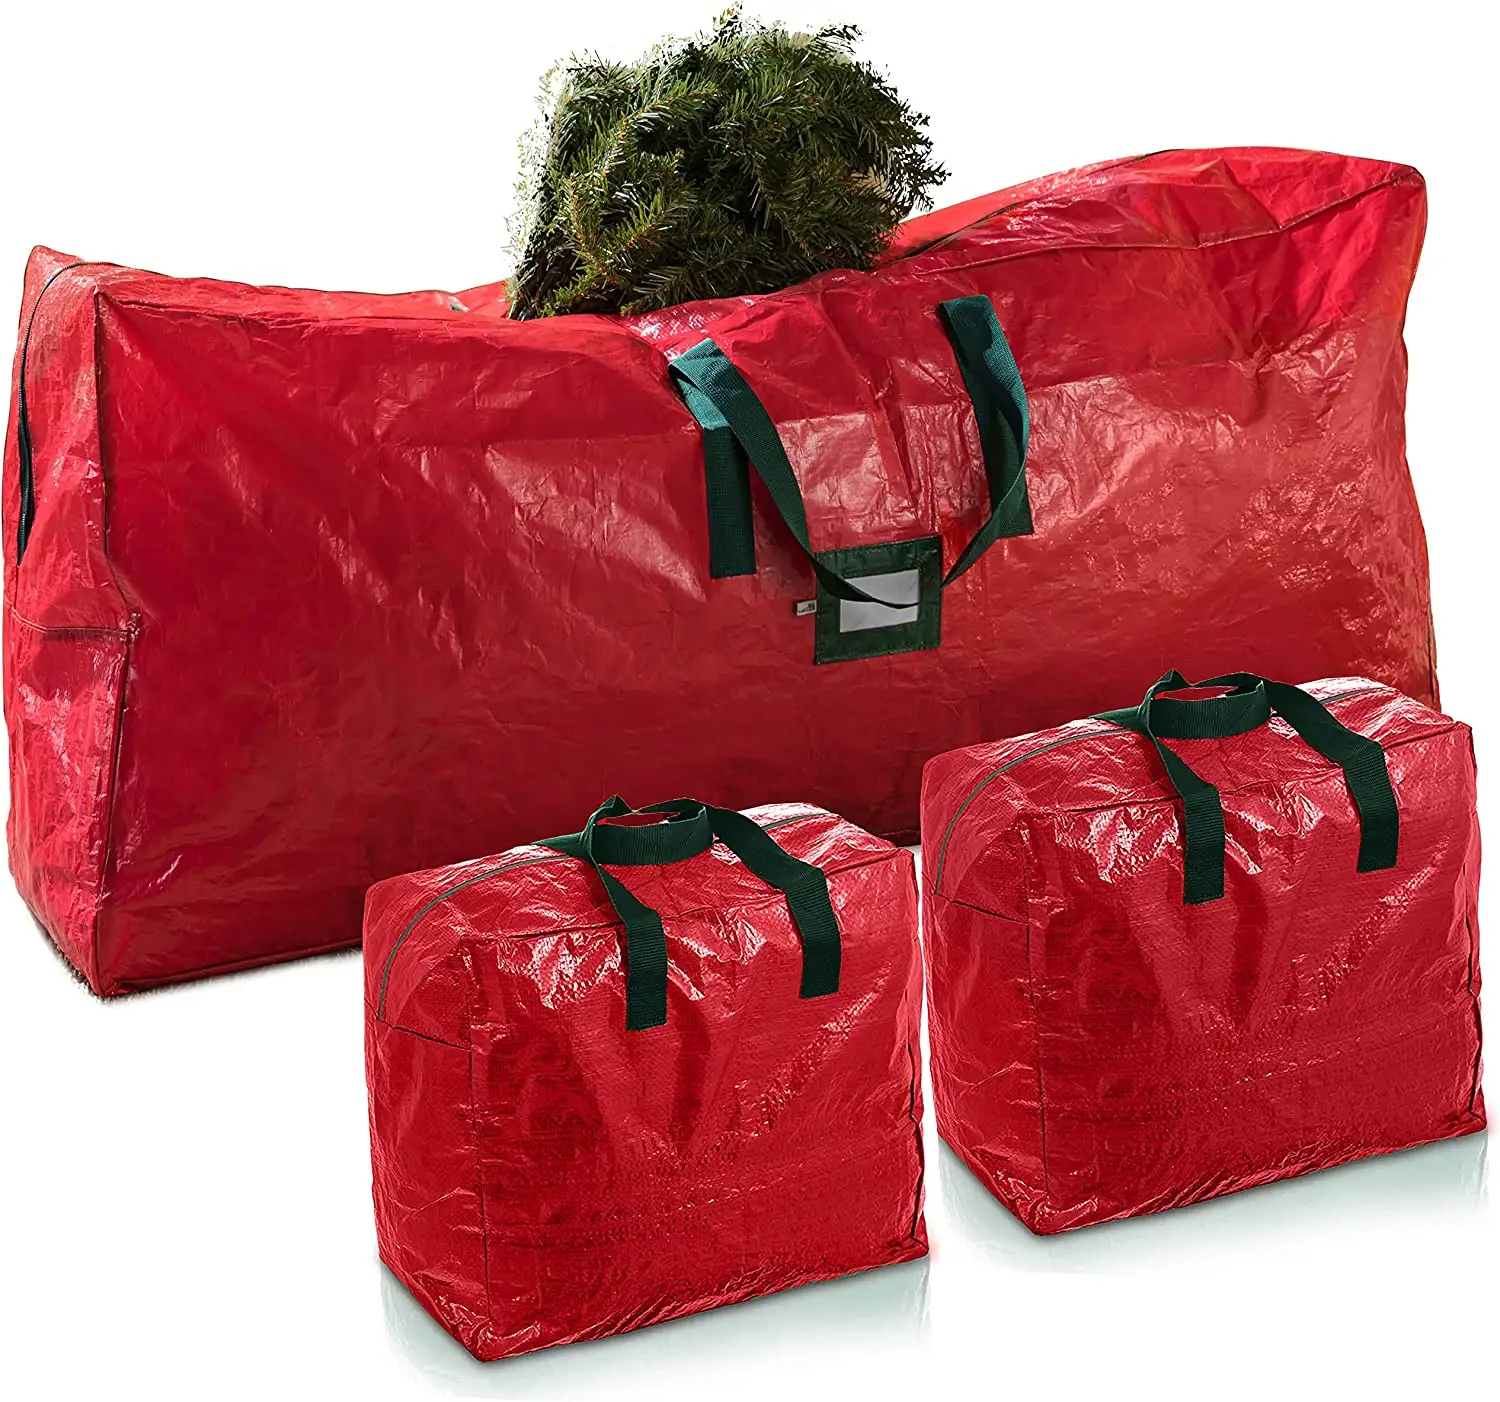 3 paket noel yapay ağaç çantası büyük ağır saklama kabı 7.5 ayak boyunda demonte tatil ağacı çantası kadar uyuyor